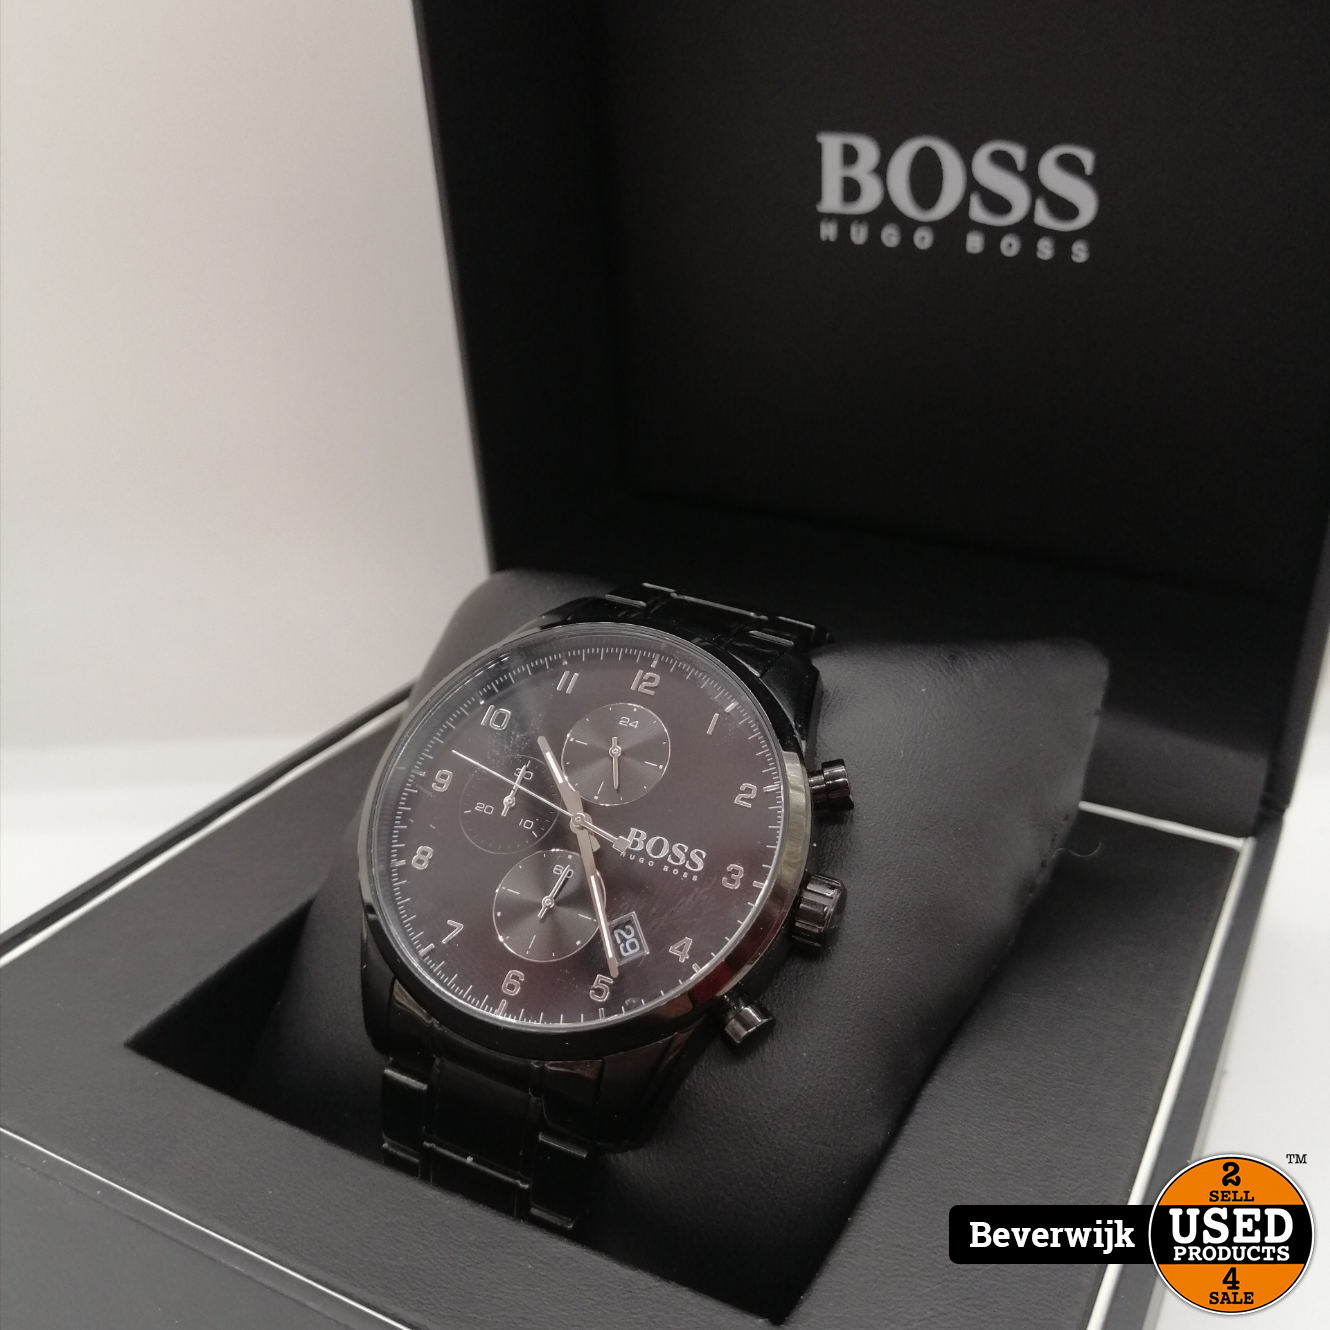 Moet handleiding Oven Hugo Boss hb.396.1.34.3402 Heren Horloge - In Nette Staat - Used Products  Beverwijk